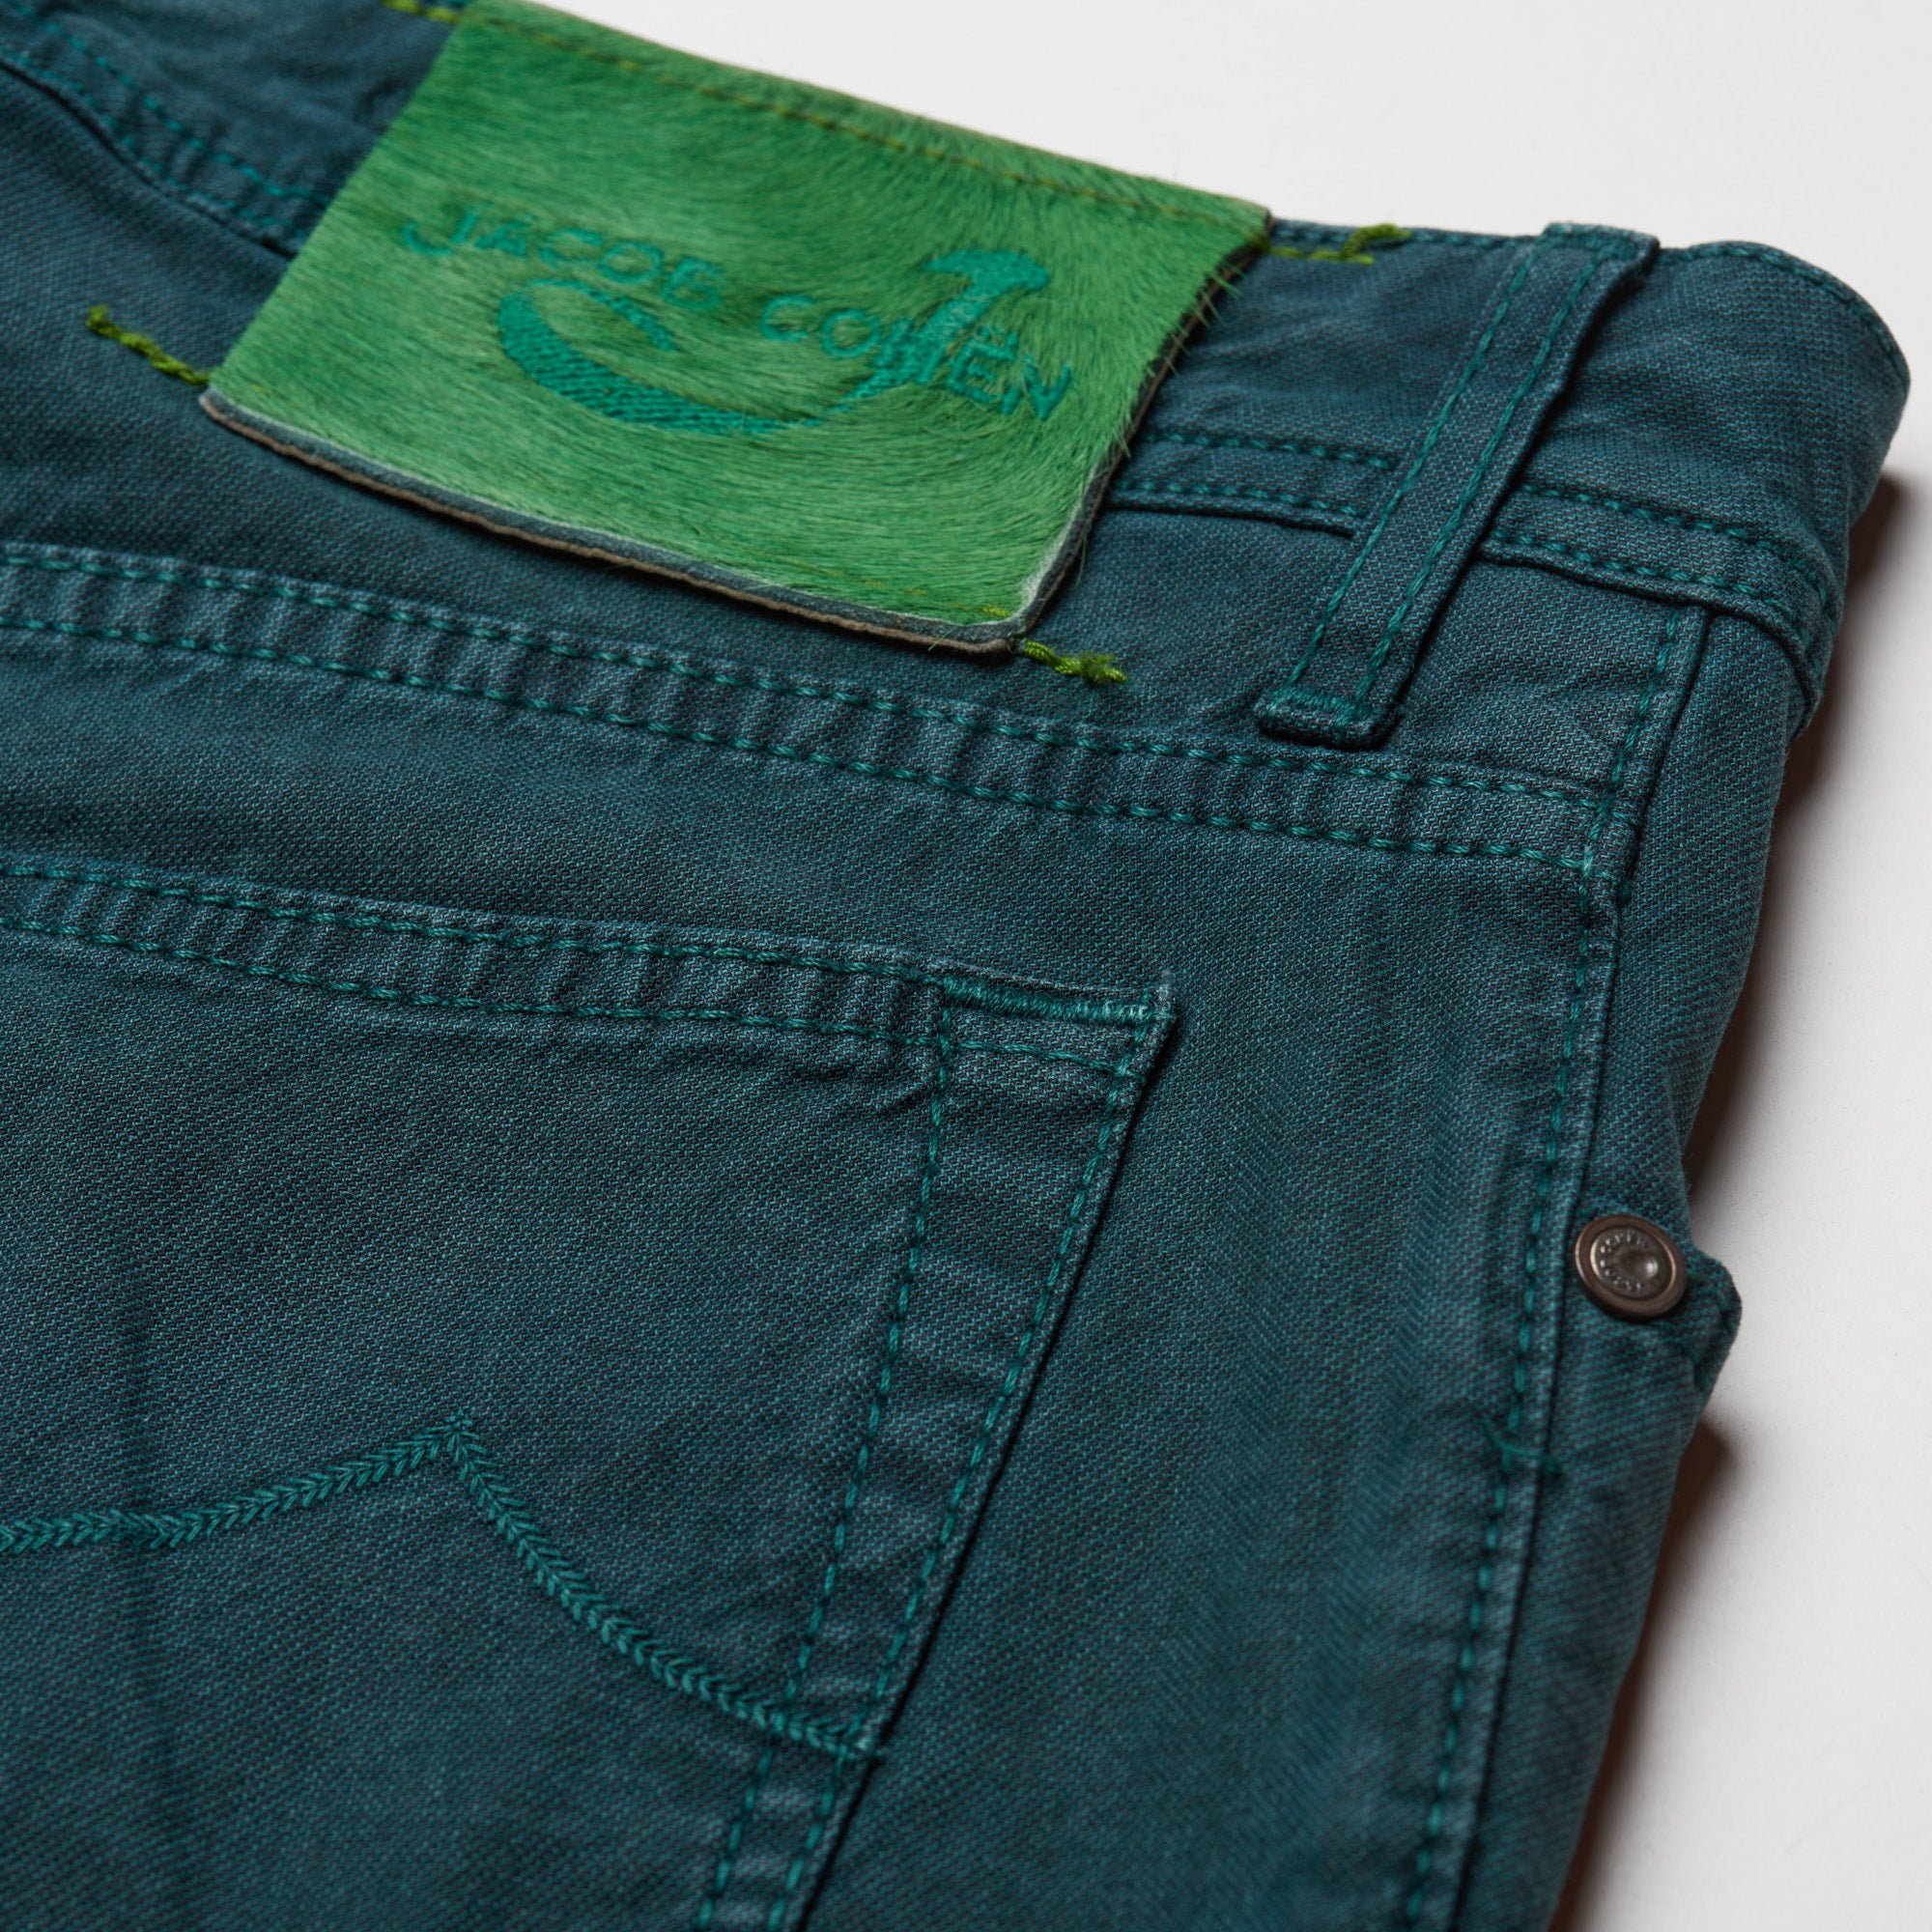 JACOB COHEN J688 Comfort Vintage Green Cotton Stretch Slim Fit Jeans Pants US 33